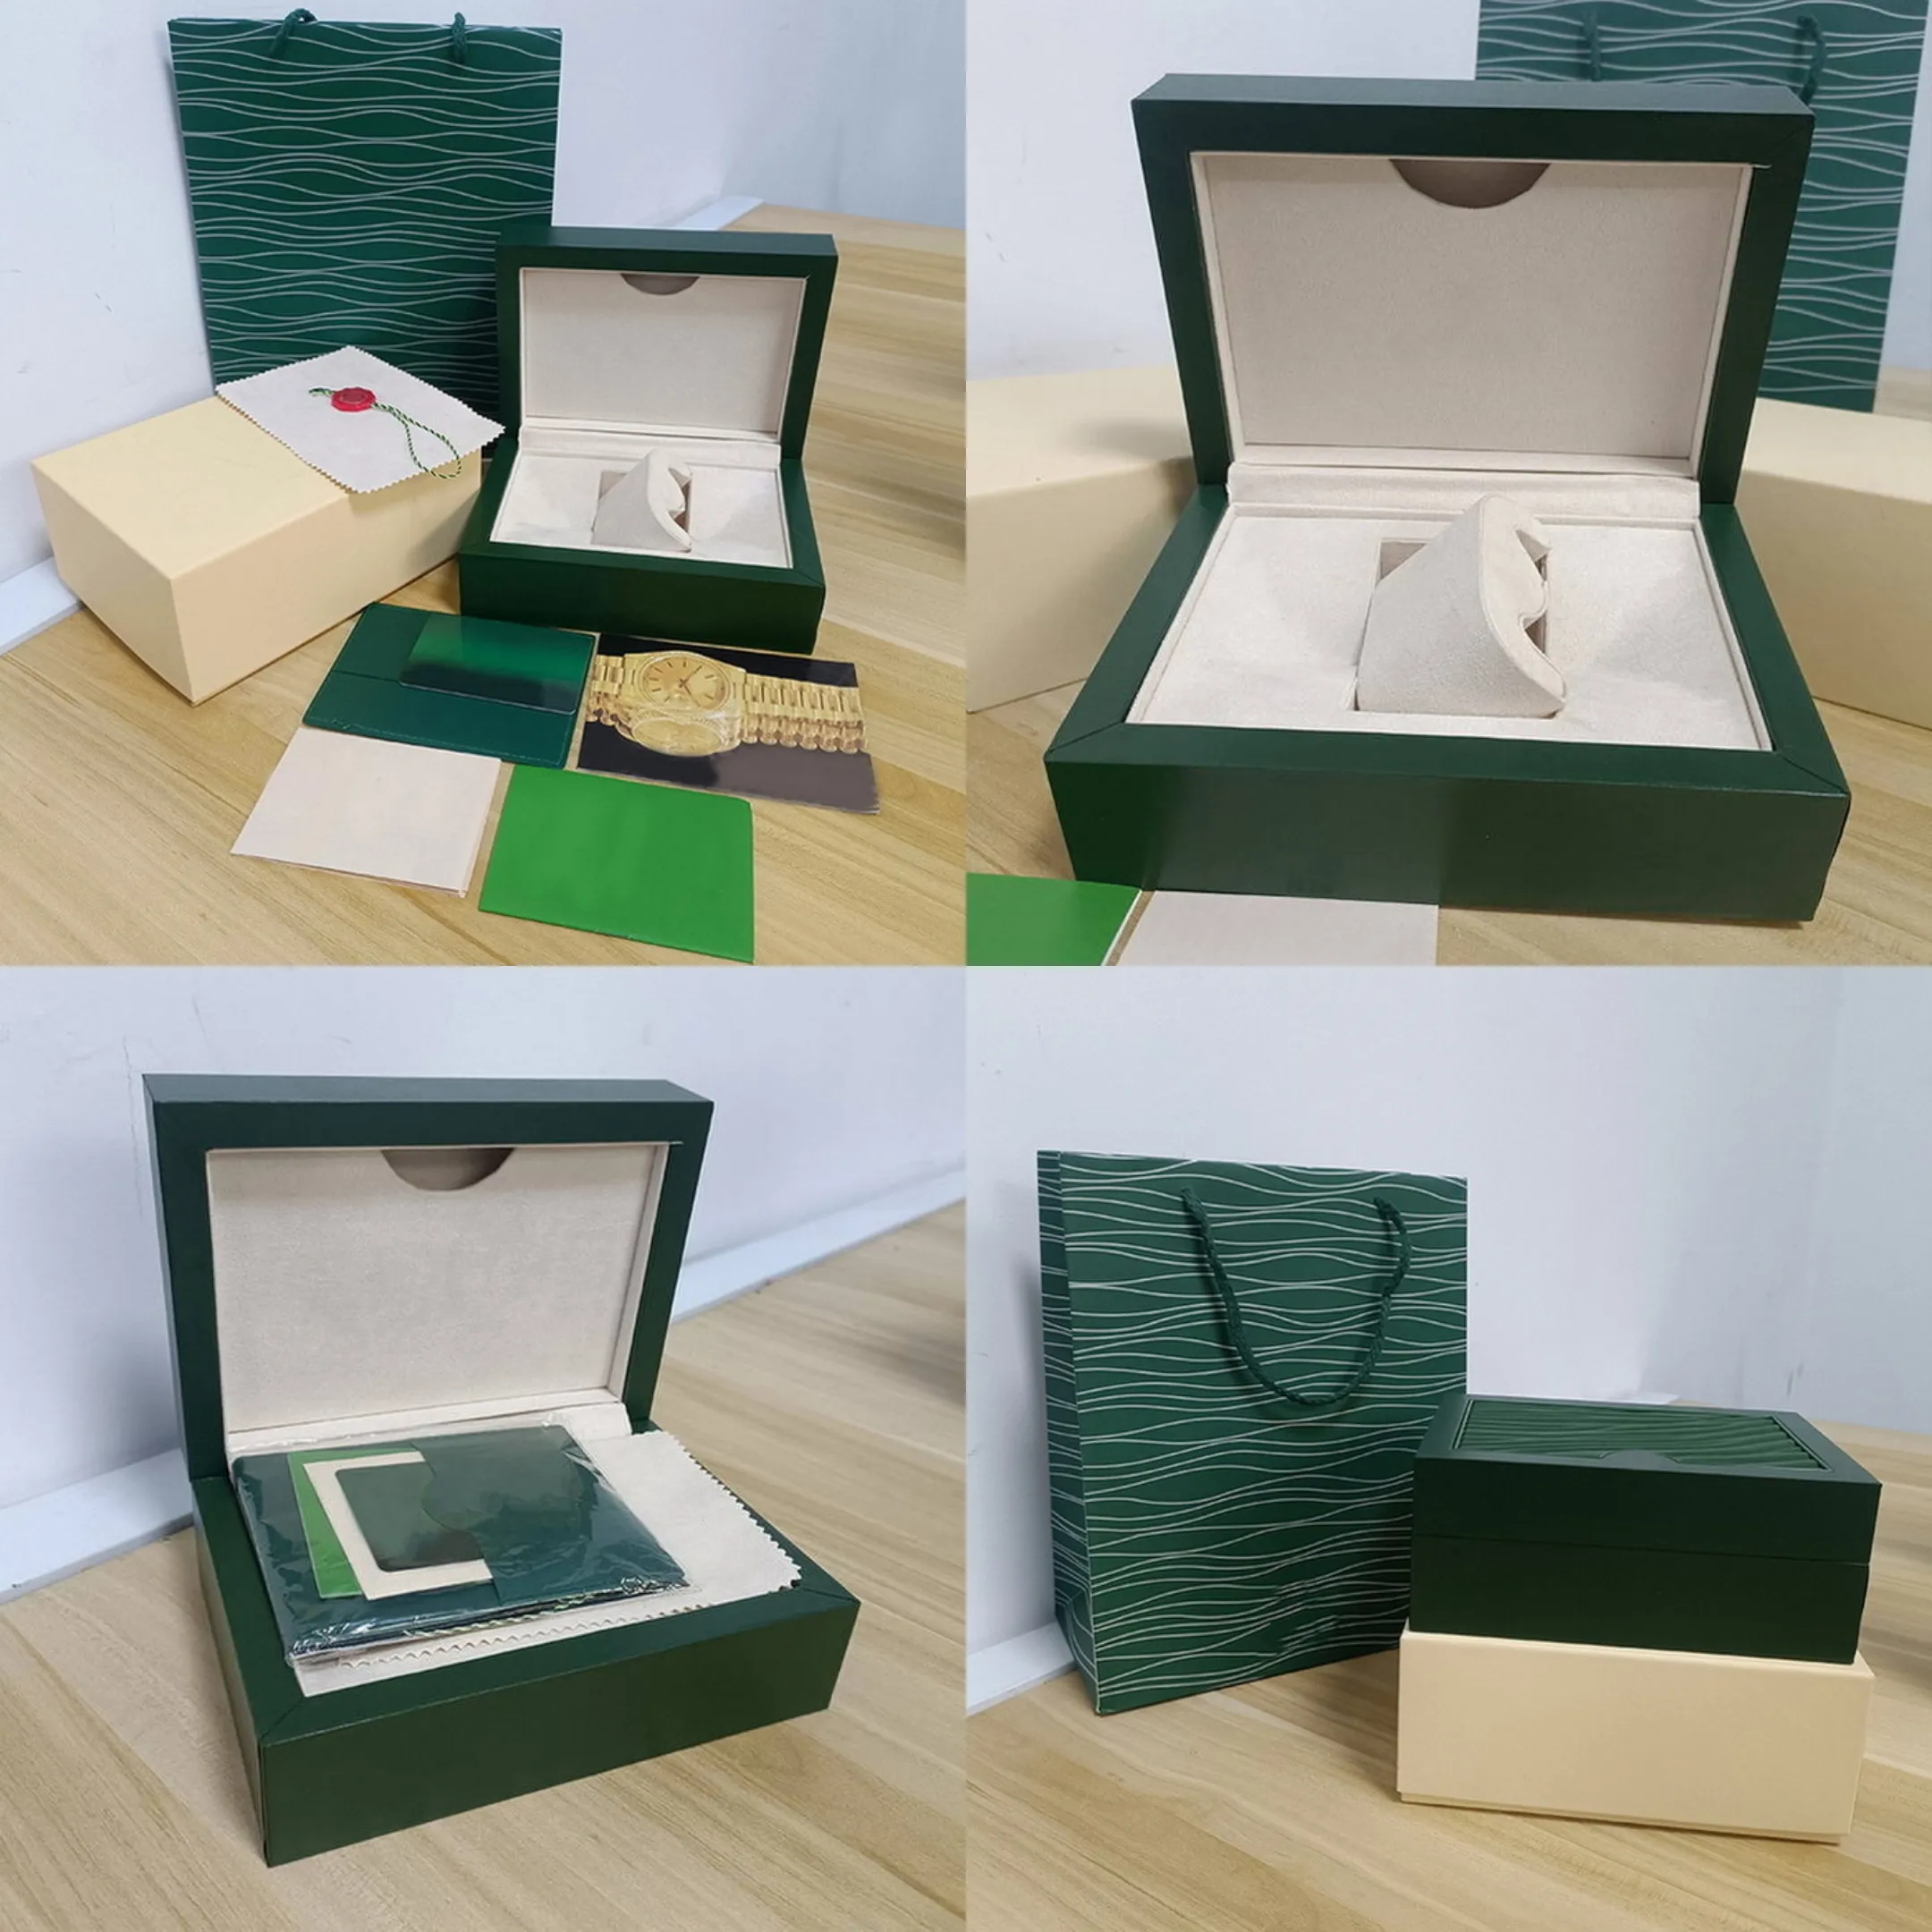 Boîte à montres Rolex verte Boîtes à montres de luxe pour hommes Boîtier de montre pour femme intérieur et extérieur d'origine Montre rolej pour homme Boîtier vert Brochure Carte Accessoires Certificat Sac à main